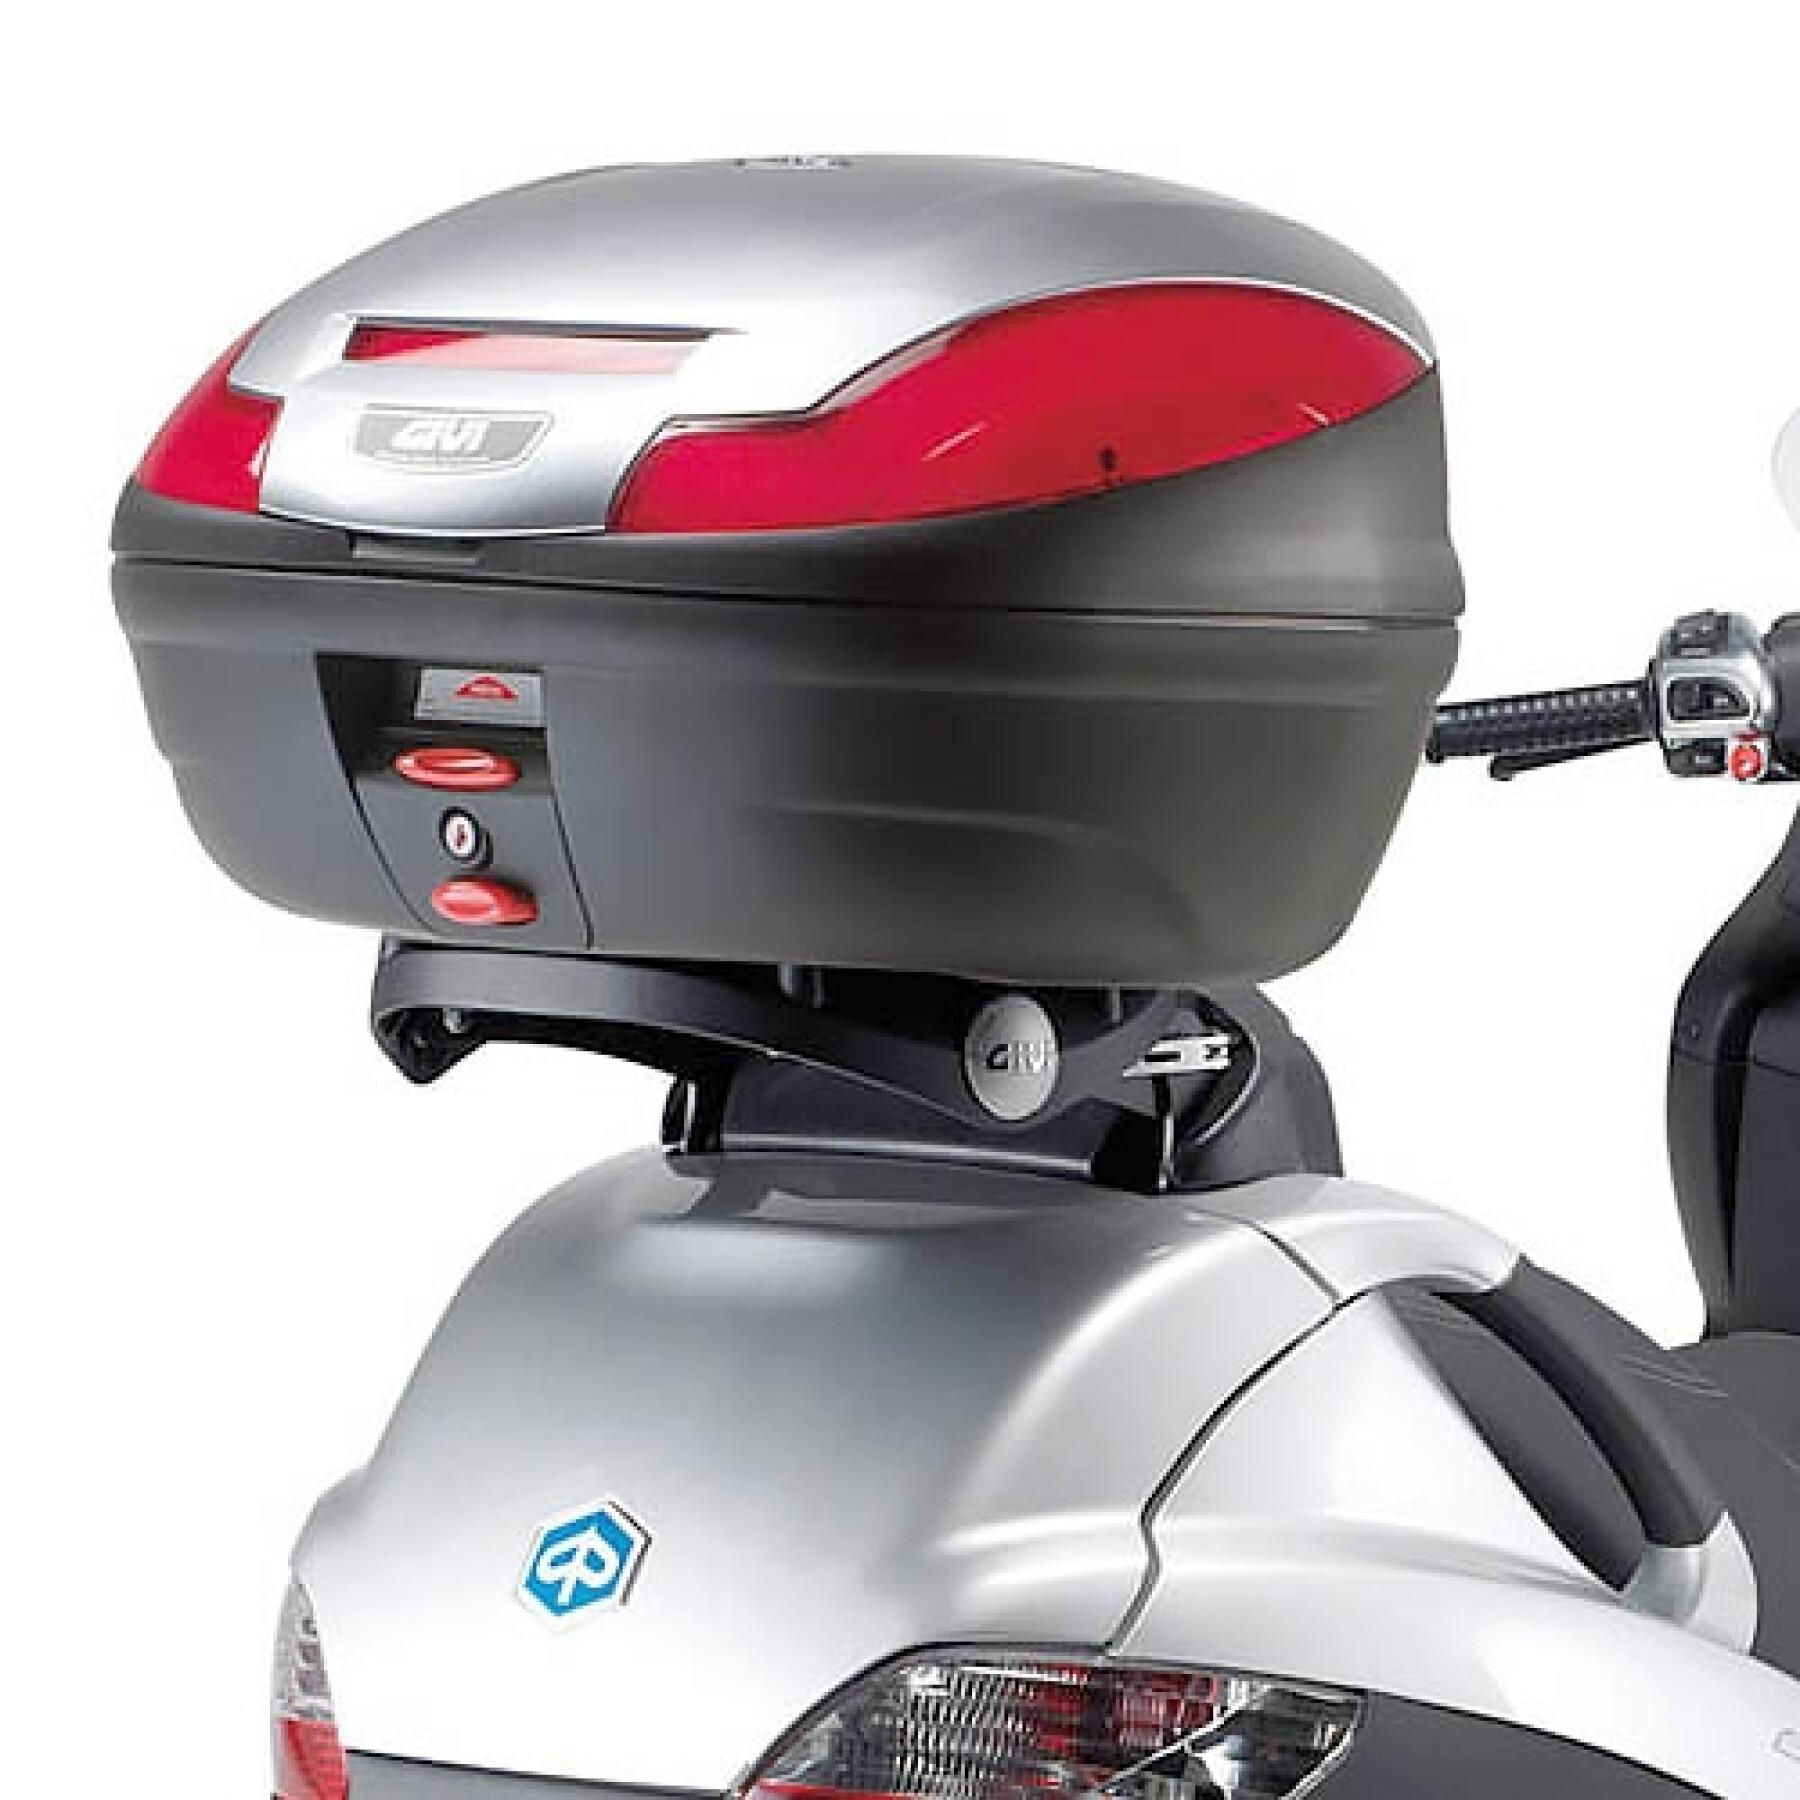 Supporto bauletto dello scooter Givi 400 (11) - Support Bauletto moto Givi Monokey Piaggio MP3 Touring 300